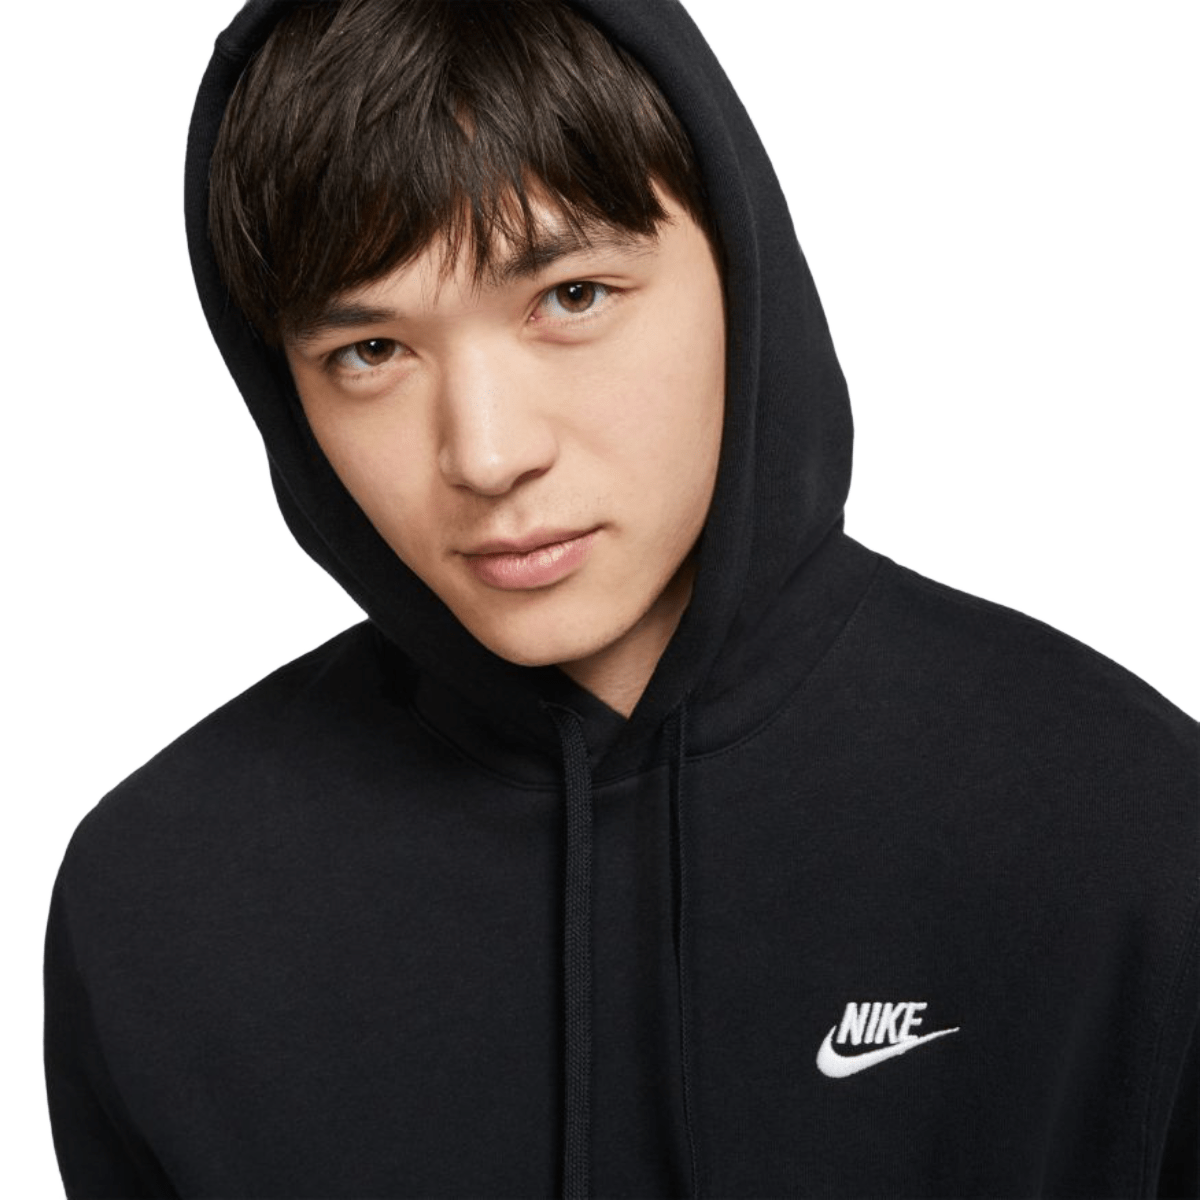 Nike Sportswear Men's Club Fleece Pullover Hoodie (Buff Gold/White